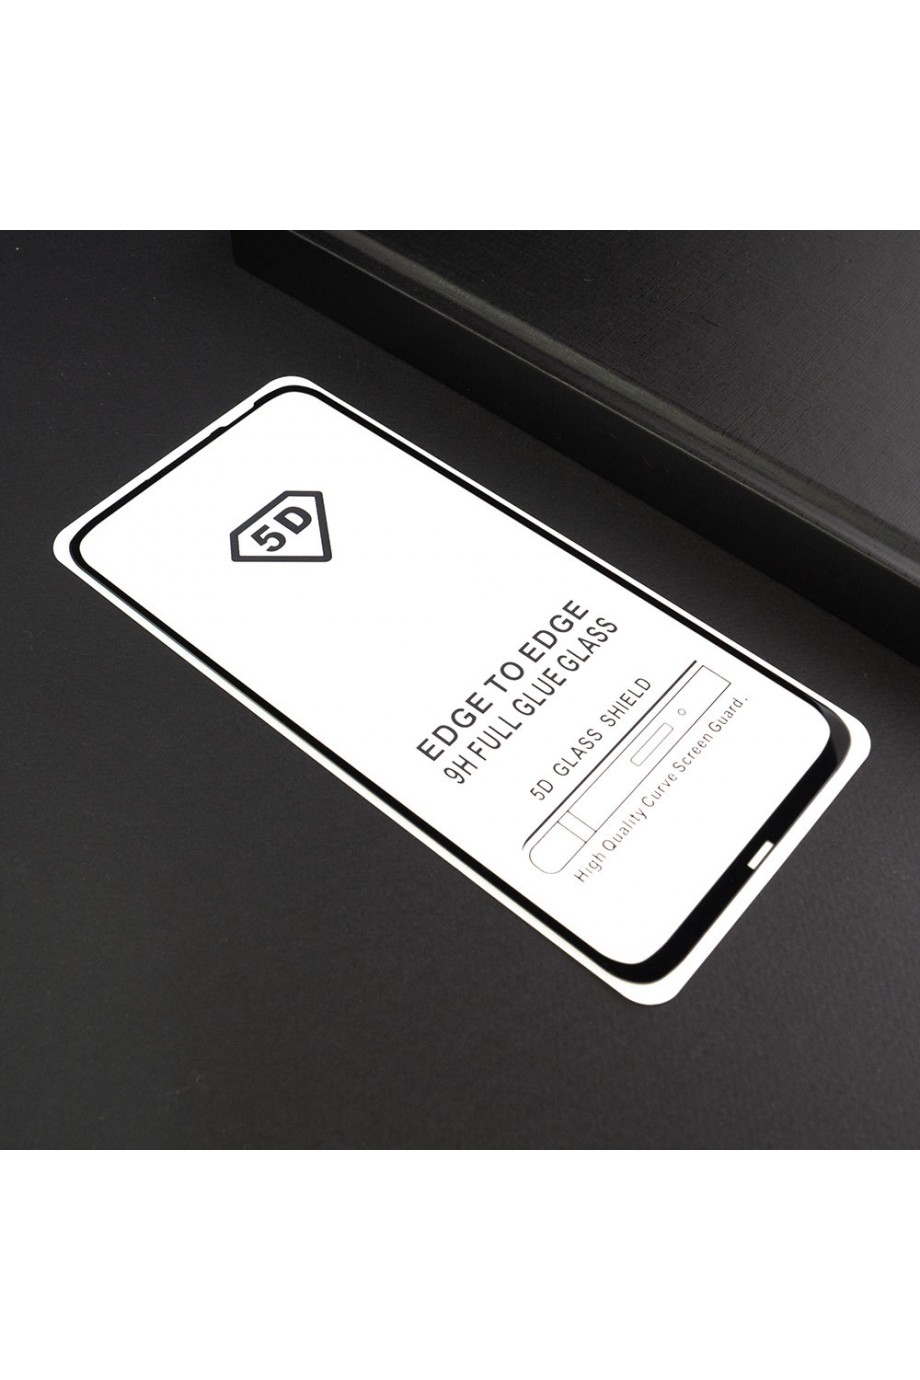 Защитное стекло 5D Mikomo для Huawei P20 Lite 2019, черная рамка, полный клей